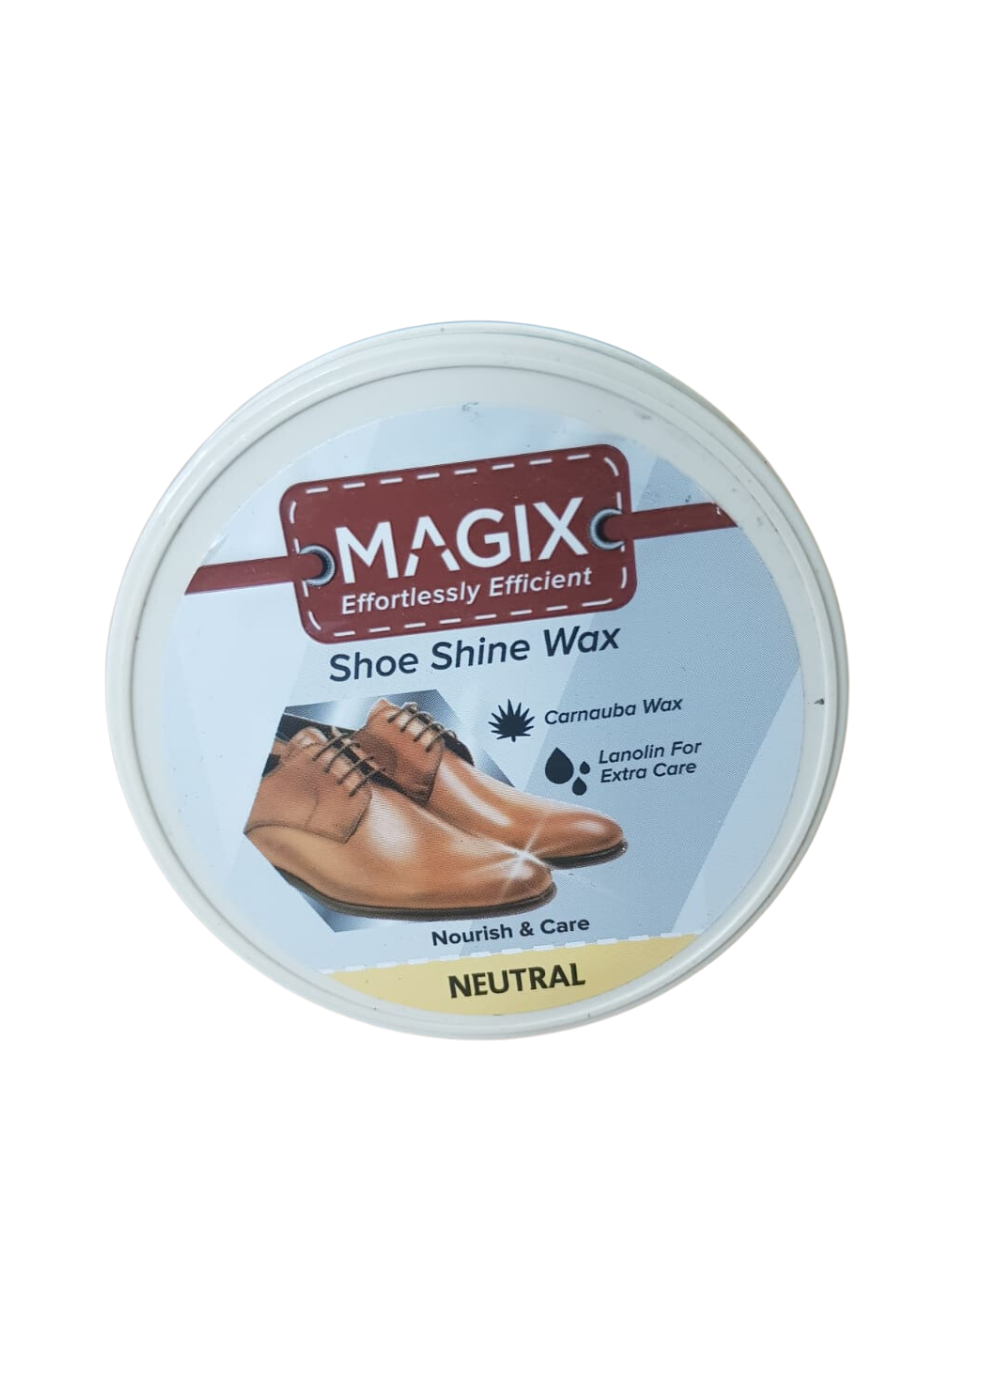 MAGIX Shoe Shine Wax